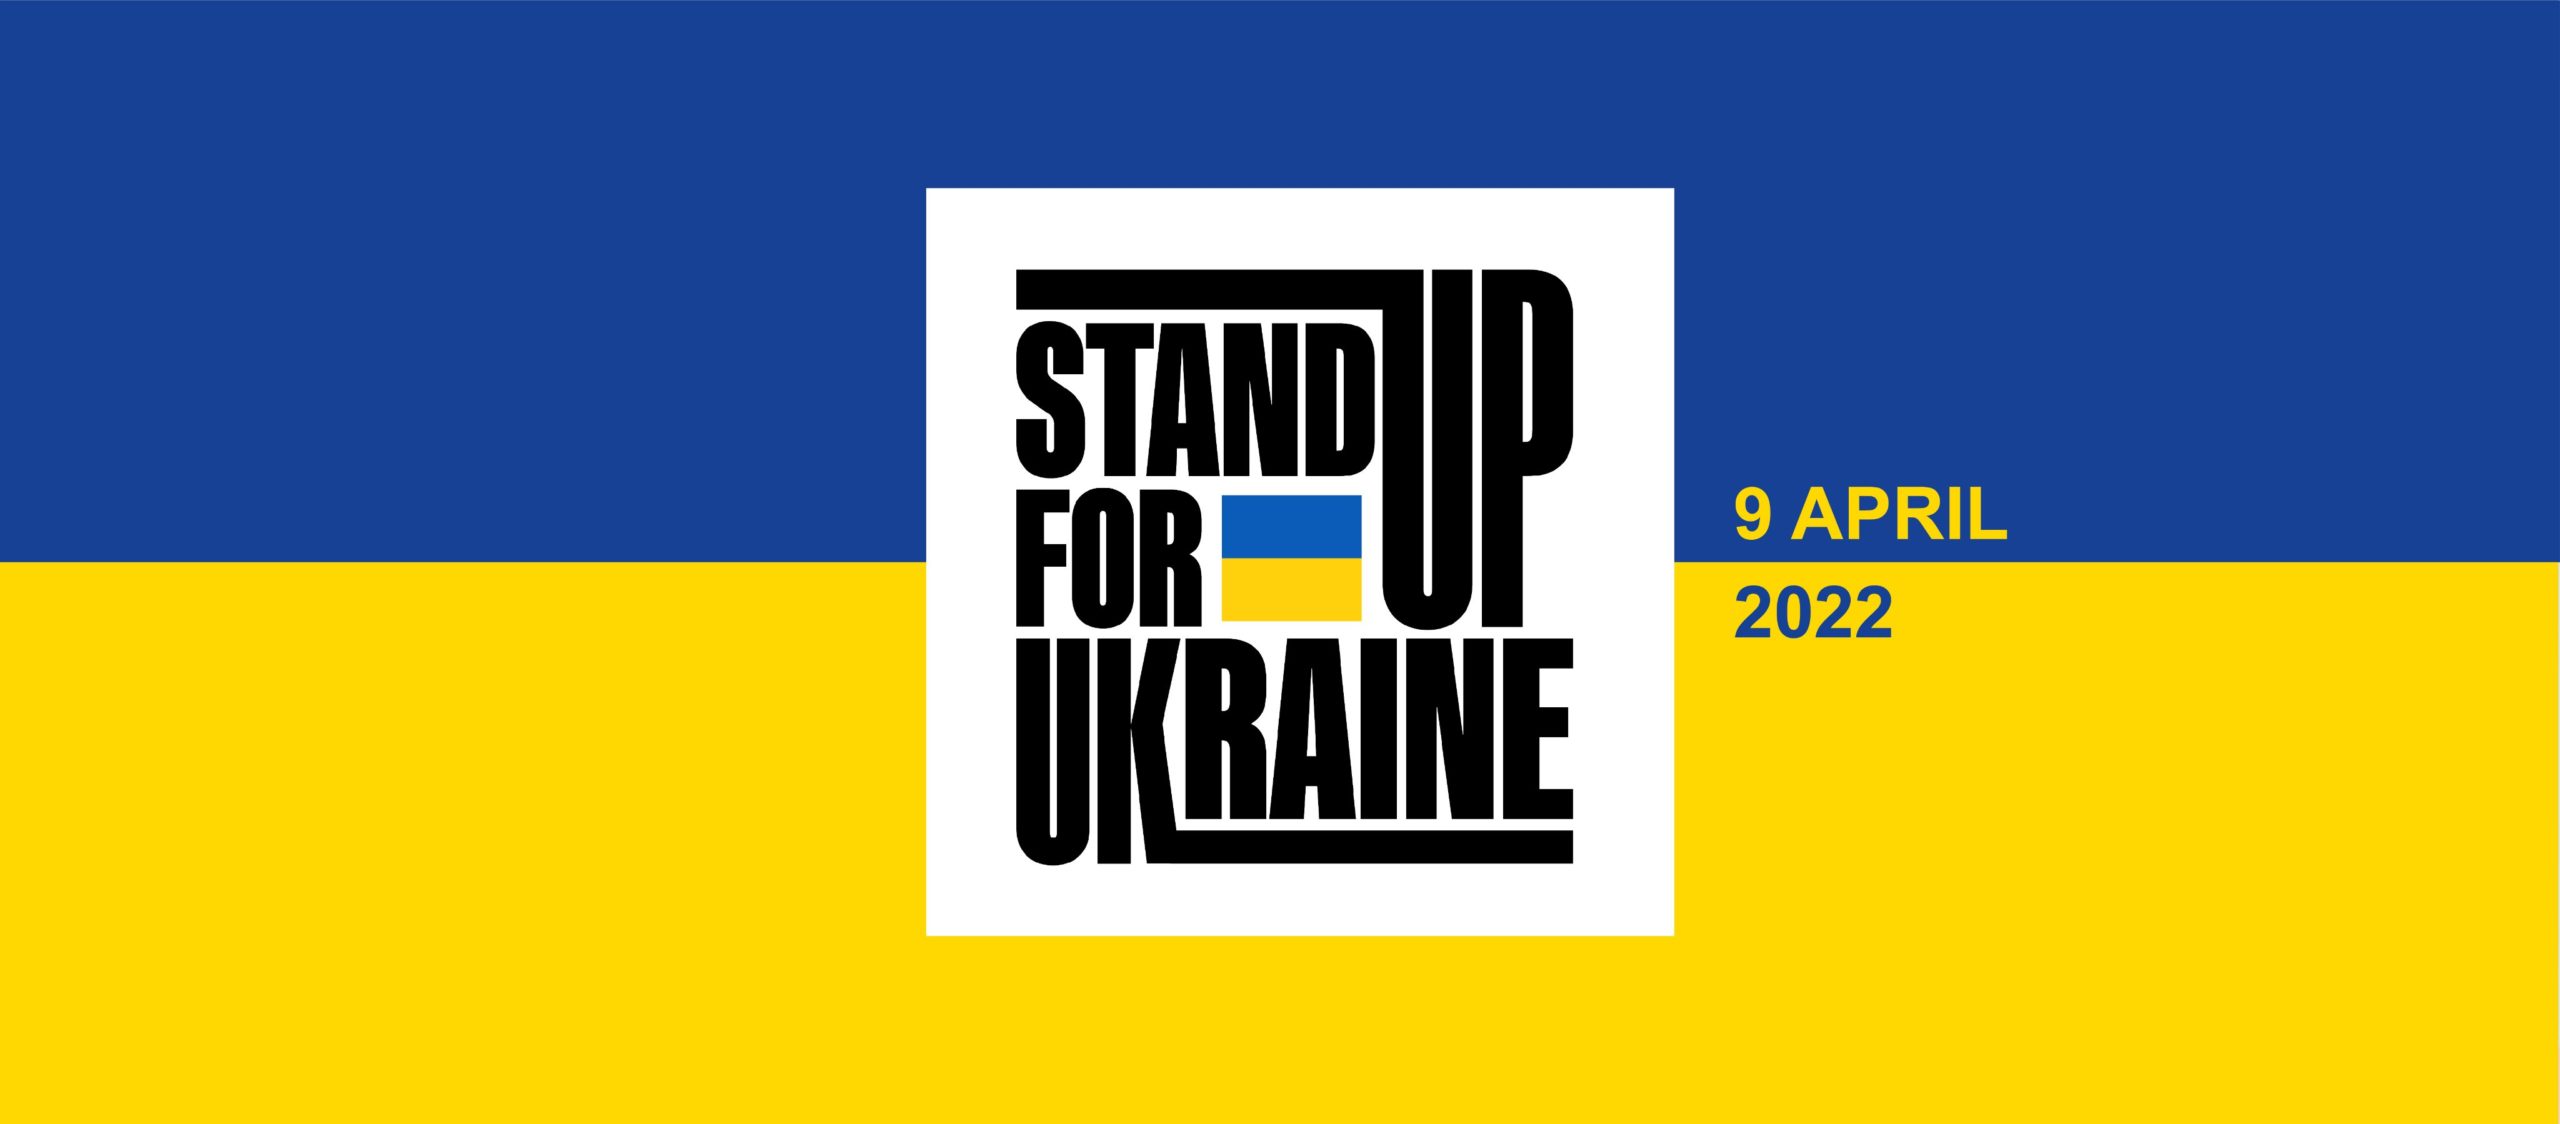 Πολλοί μεγάλοι καλλιτέχνες θα συμμετέχουν στην εκστρατεία υπέρ της Ουκρανίας